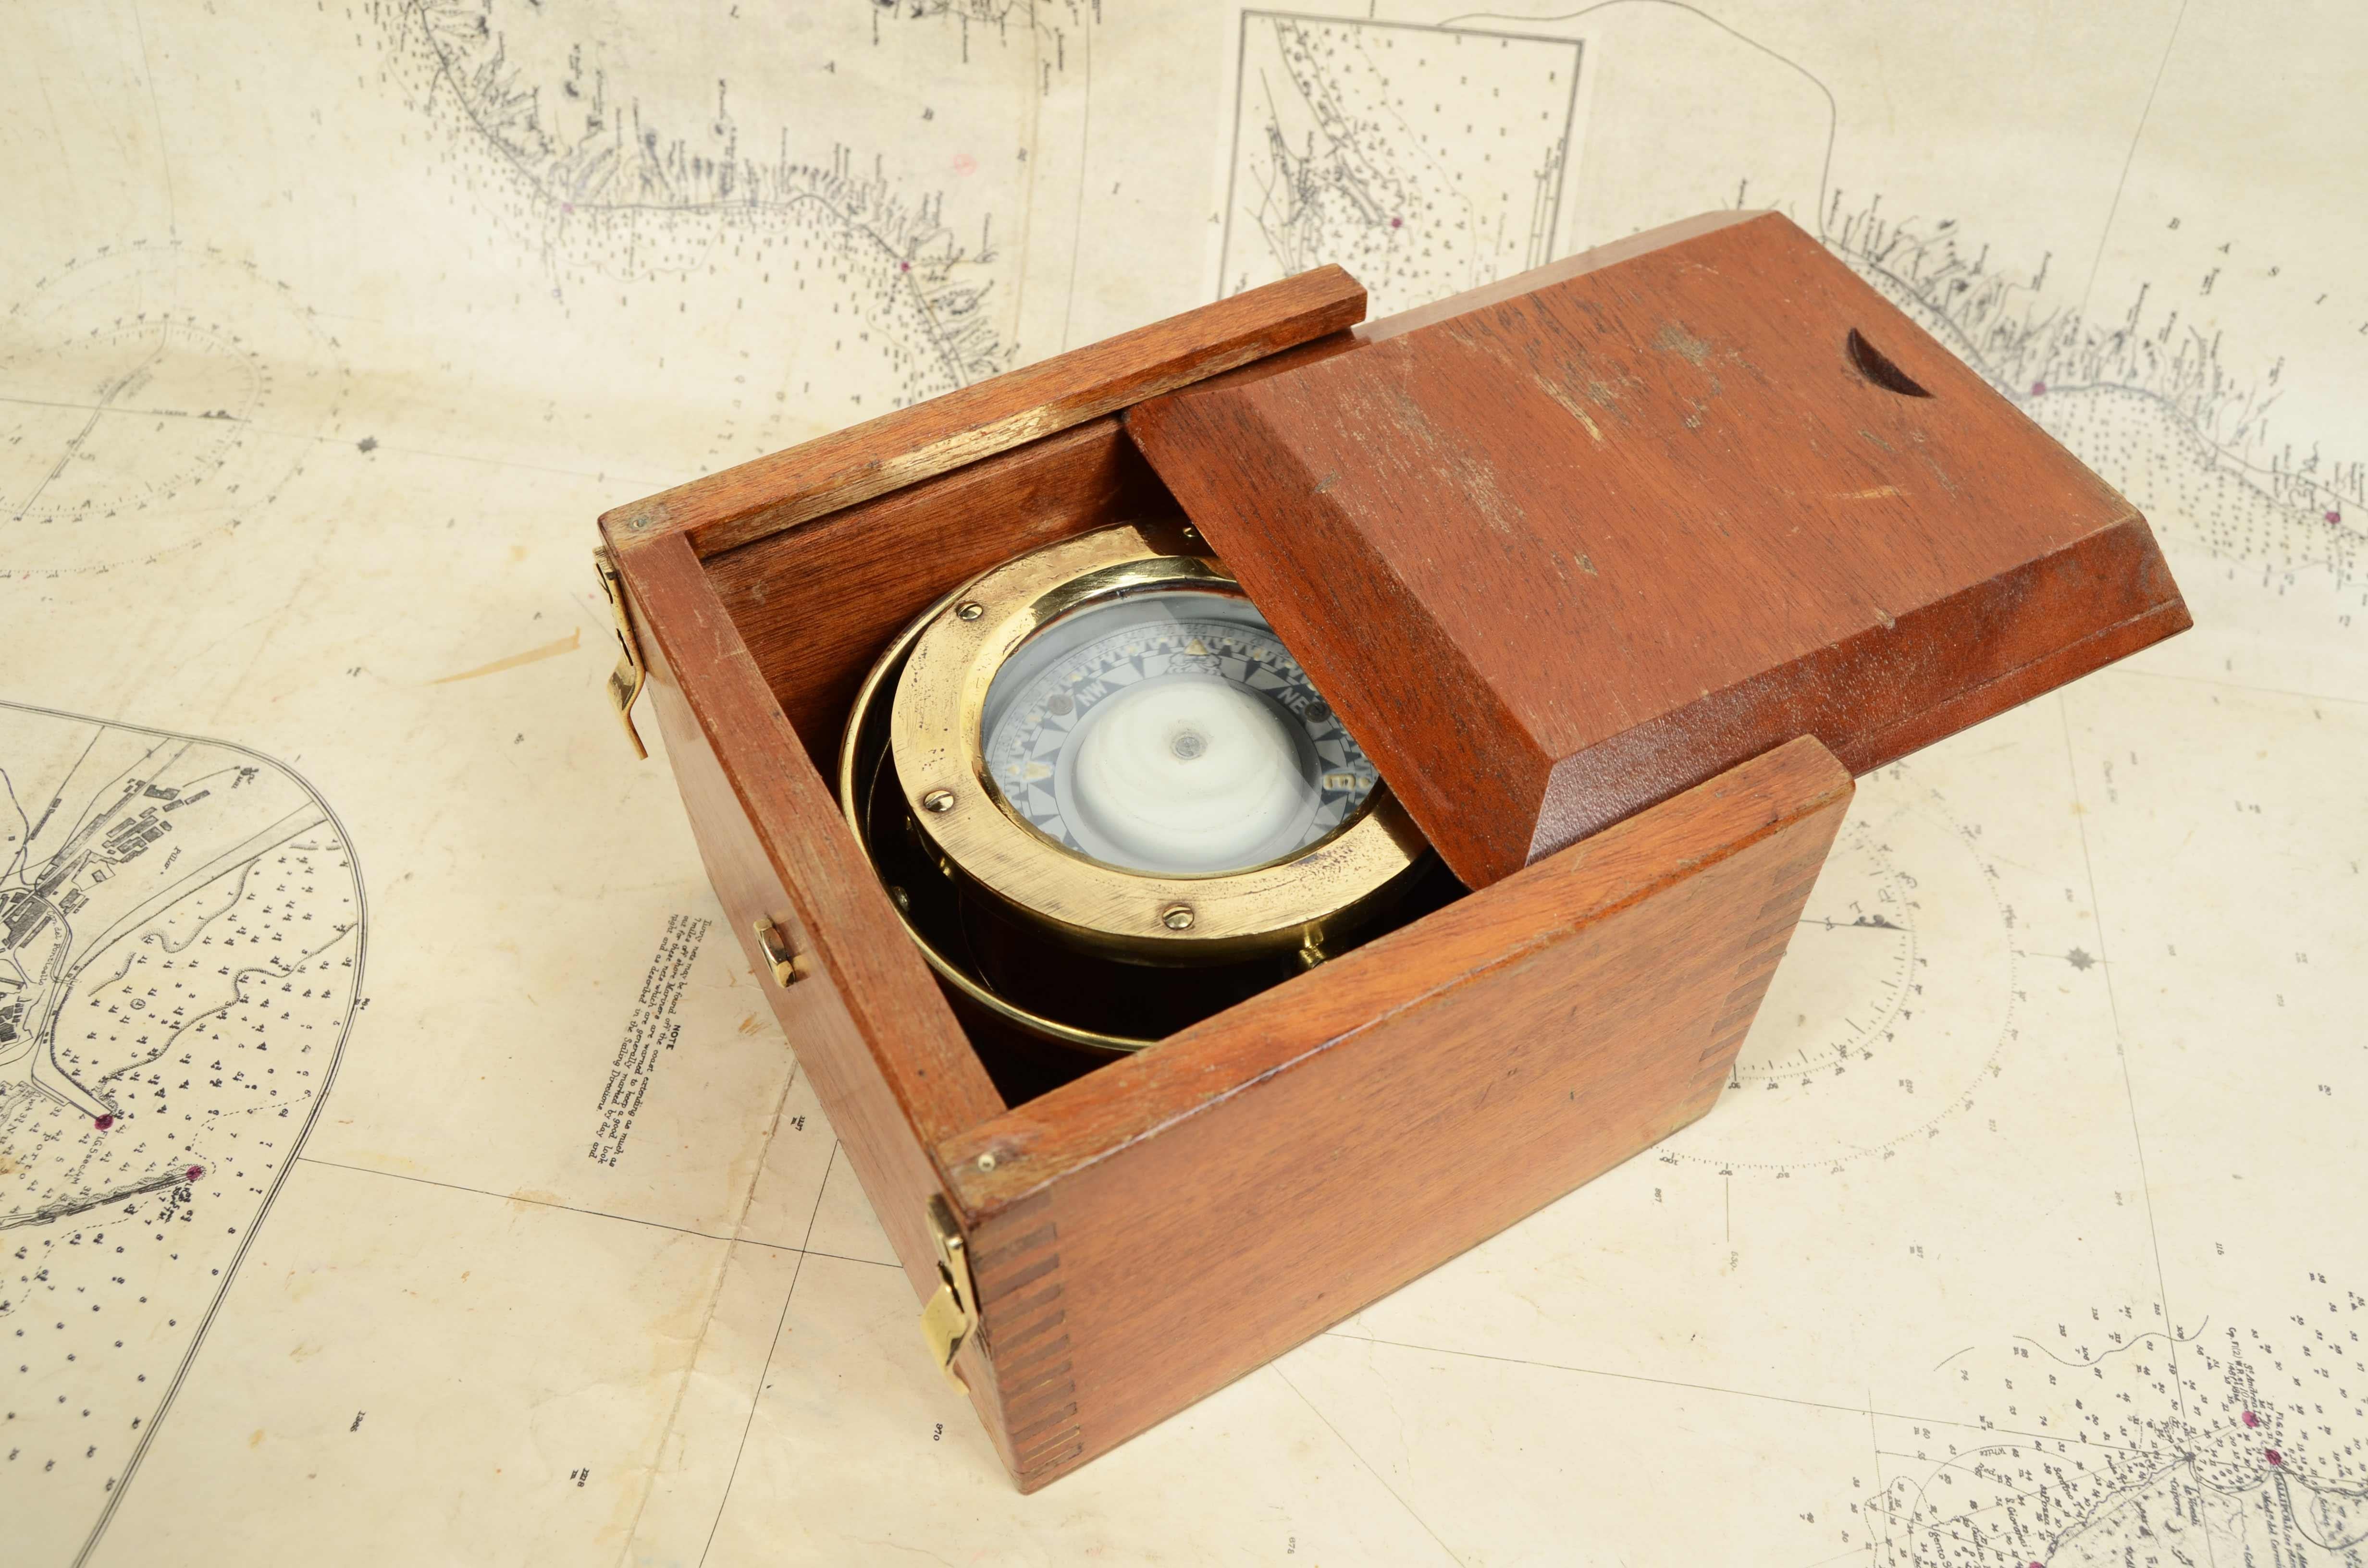 Nautischer Magnetkompass aus Messing, signiert Sestrel London aus der zweiten Hälfte des 19. Jahrhunderts, in der originalen Holzkiste mit Schlitzdeckel, ausgestattet mit Stiften und Griff  messing für die Wandmontage. 
Kartongröße cm 16x16x11 -